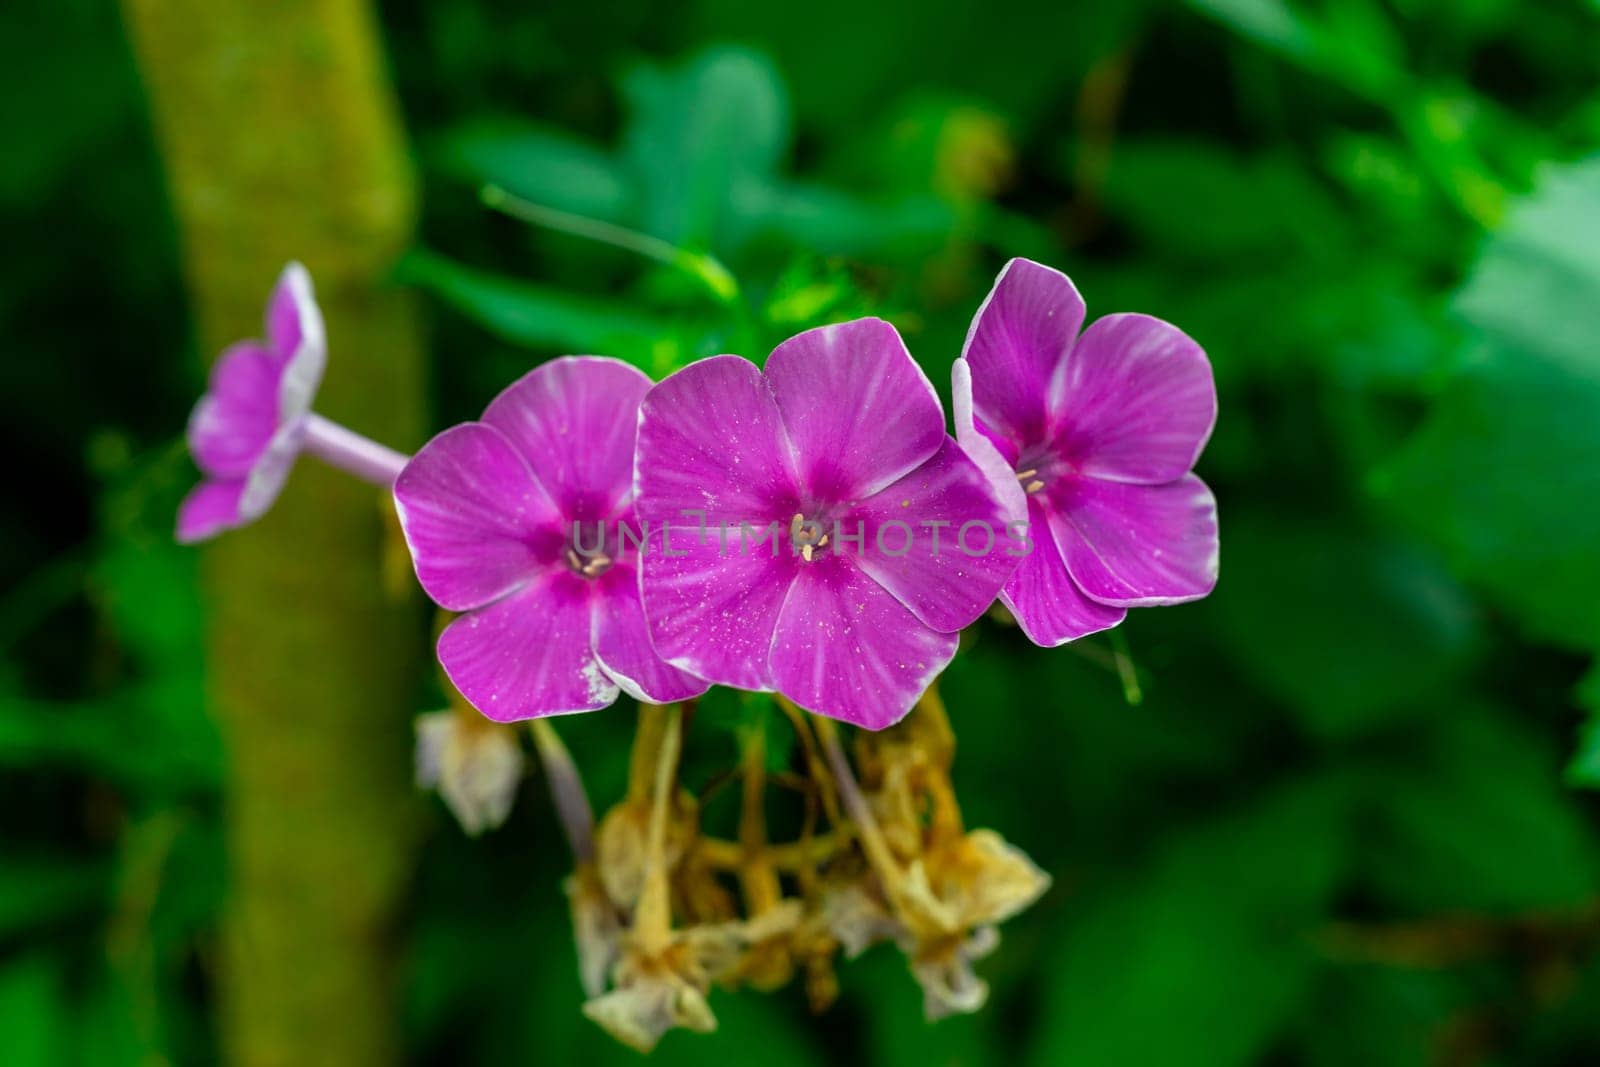 Purple phlox flowers on a green background by Serhii_Voroshchuk